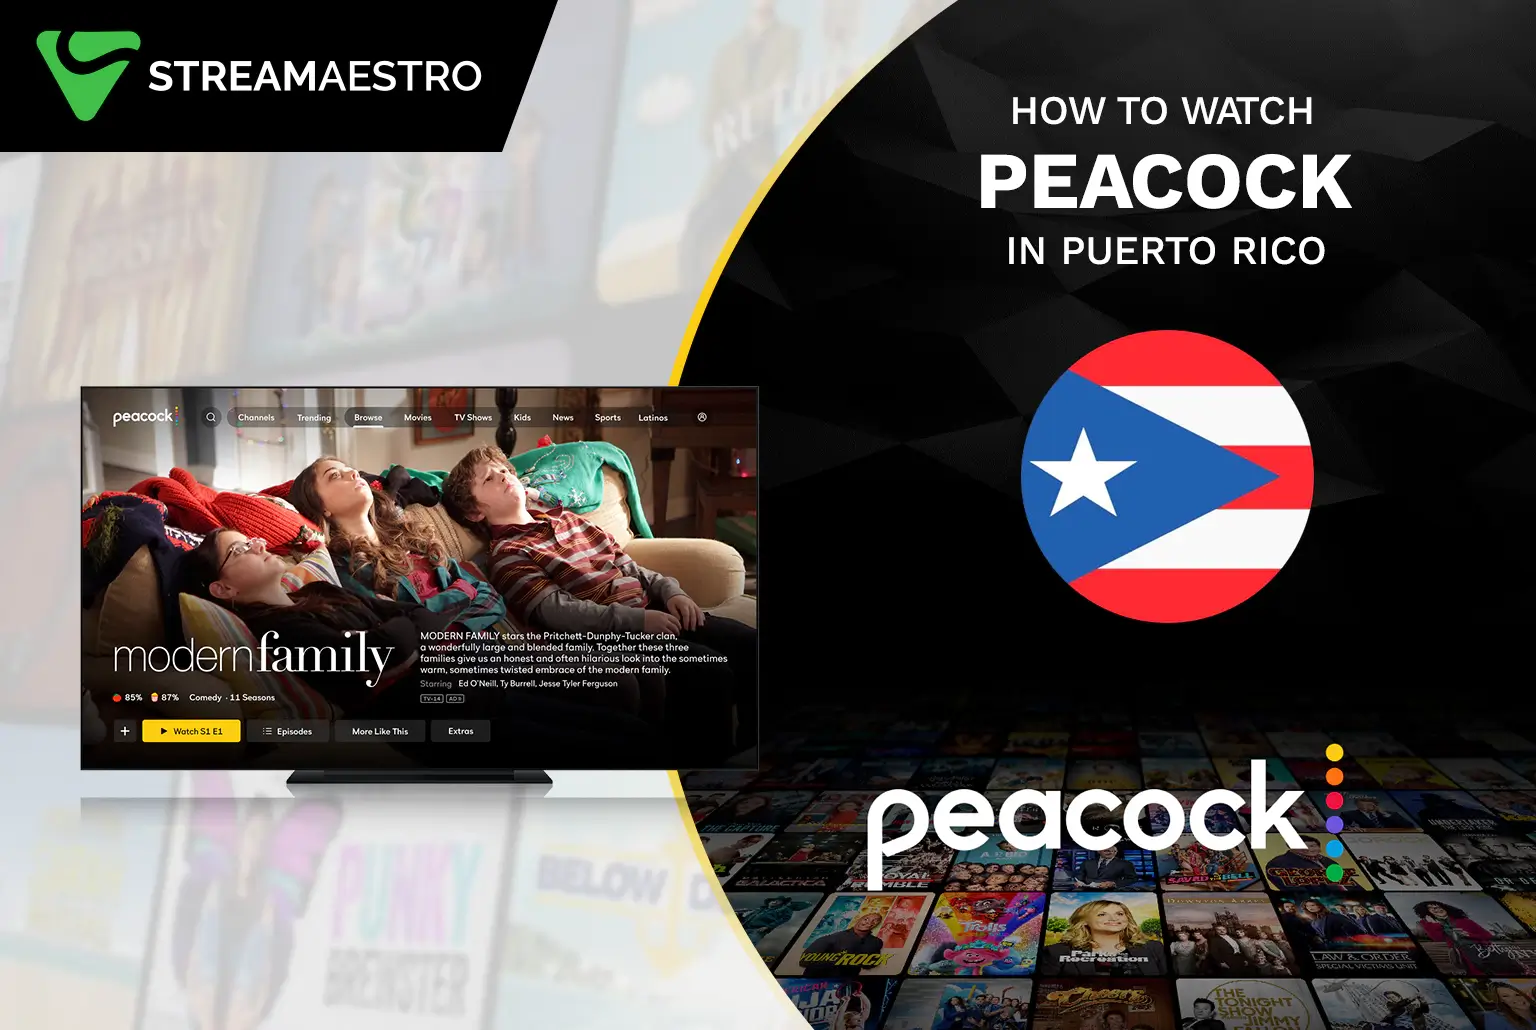 Peacock TV in Puerto Rico